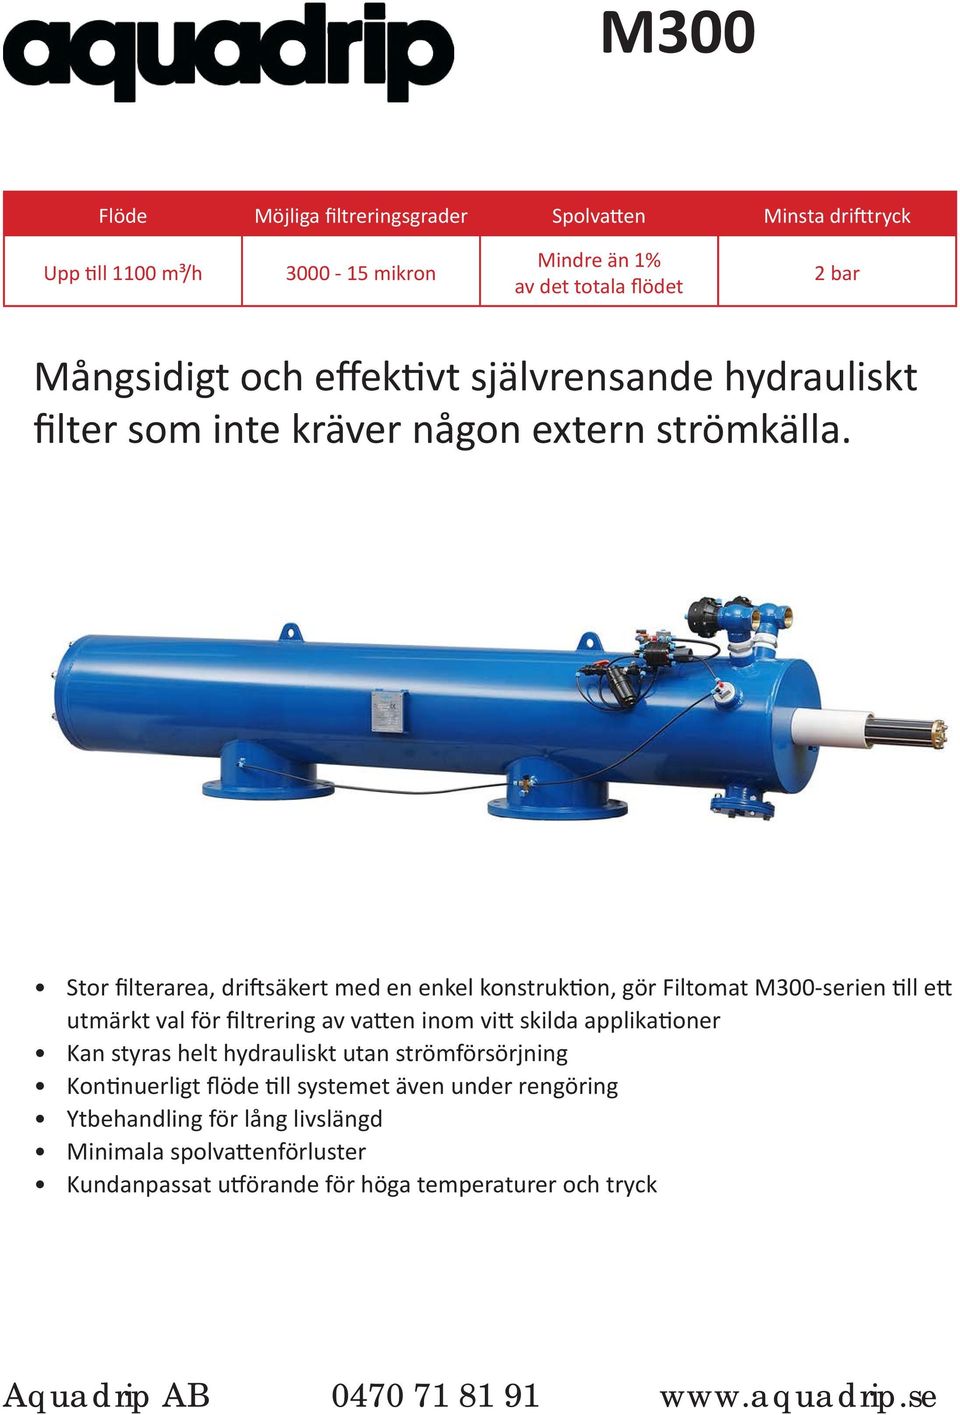 Stor filterarea, driftsäkert med en enkel konstruktion, gör Filtomat M300-serien till ett utmärkt val för filtrering av vatten inom vitt skilda